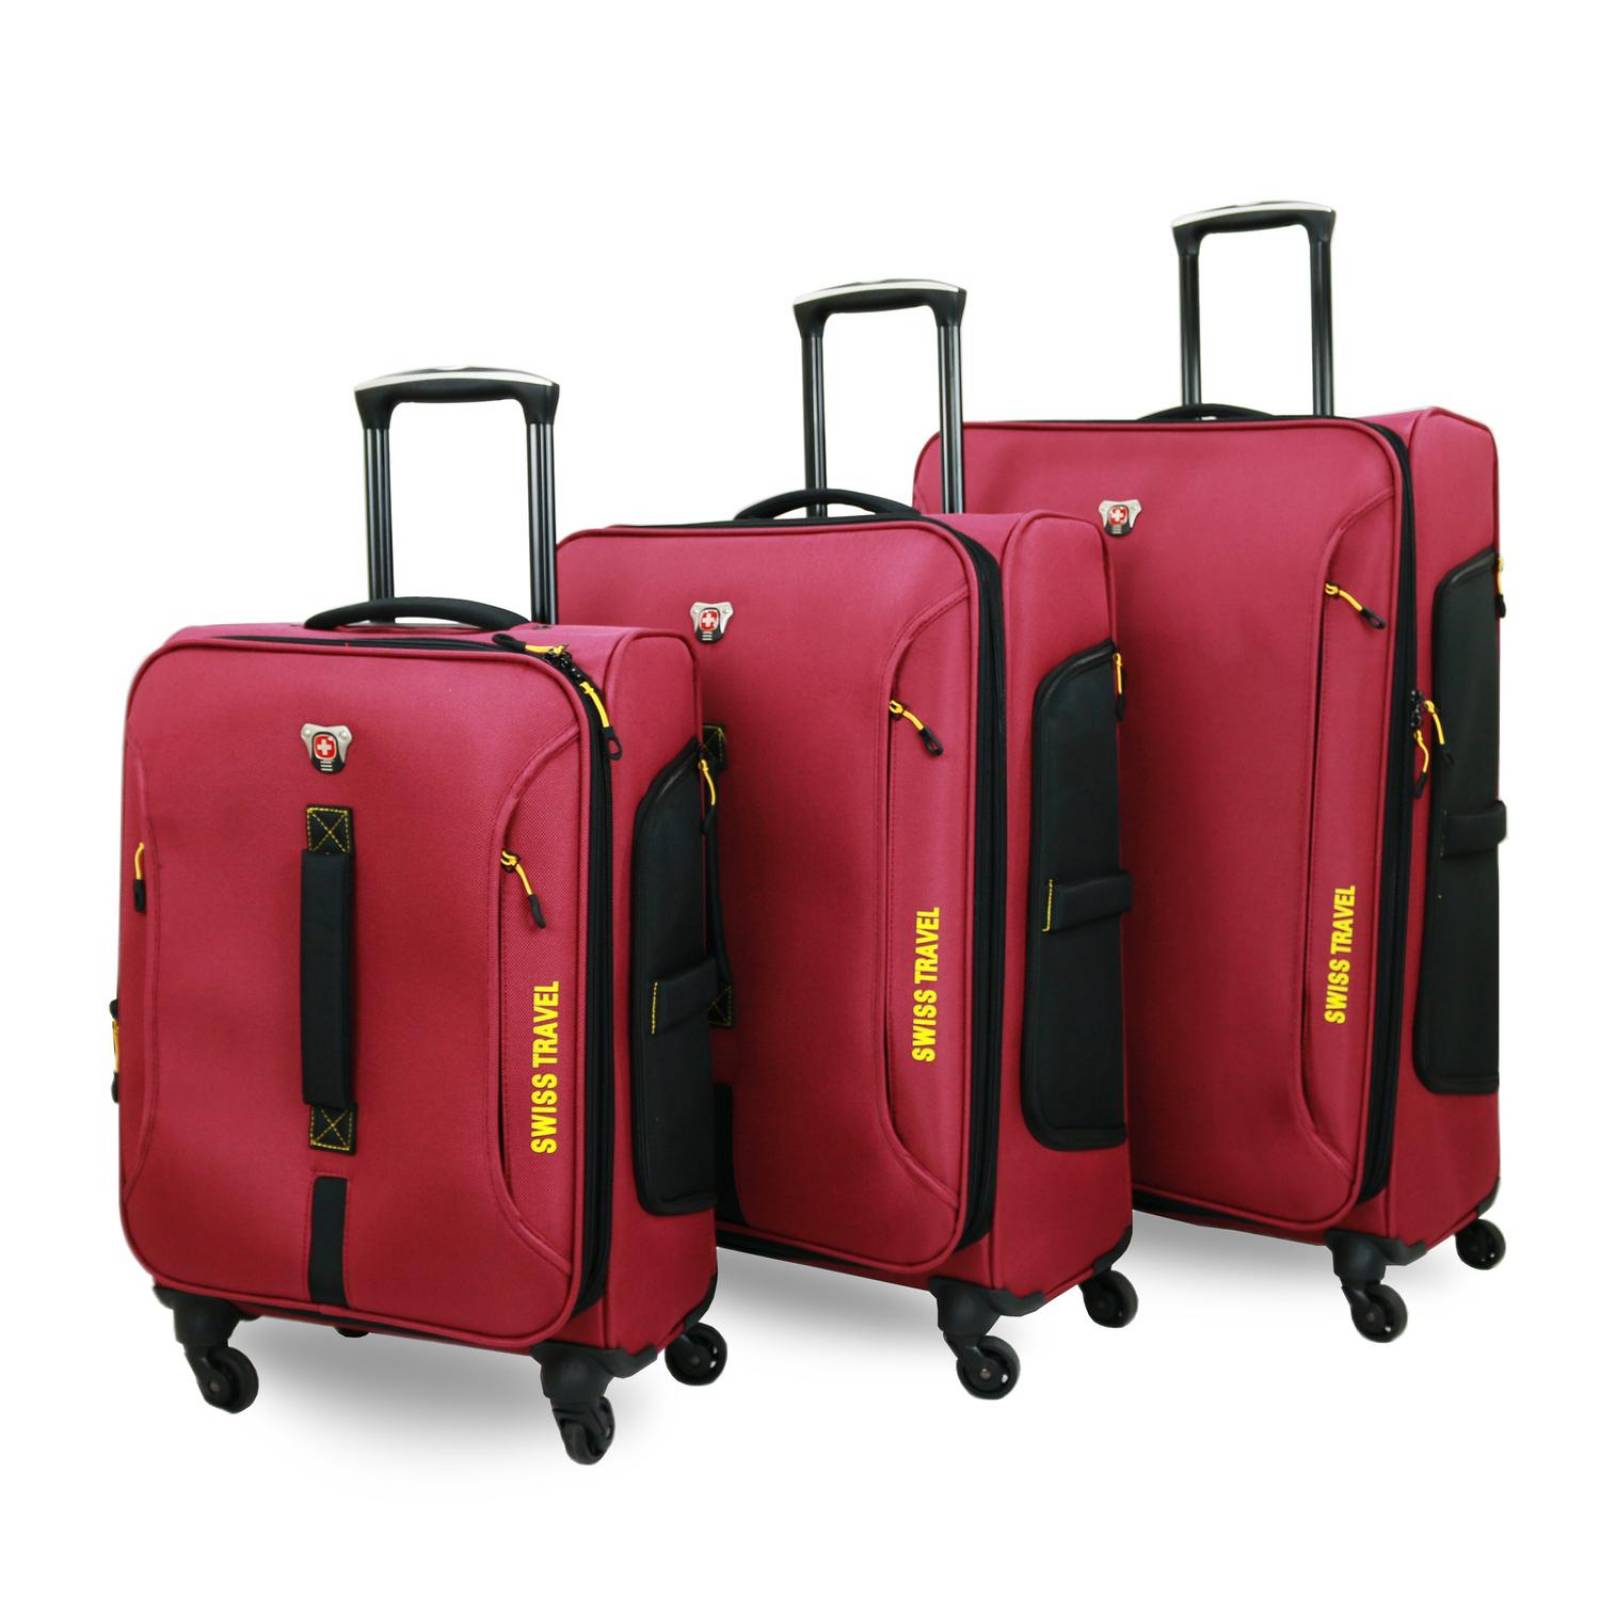 Set de 3 maletas Poliéster Swiss Travel Urban Expandible(CL) Vino